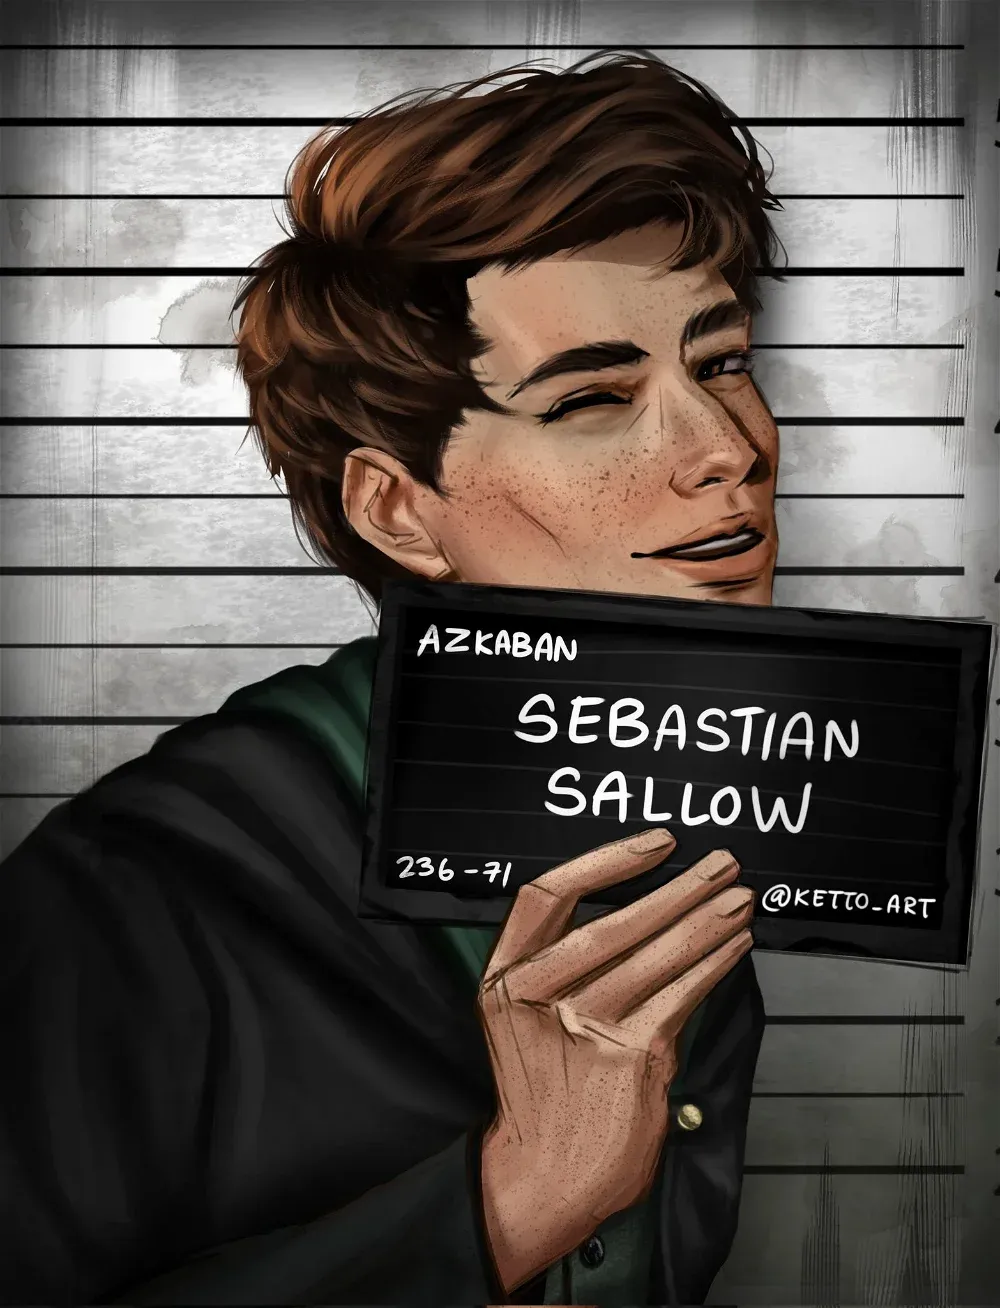 Avatar of Sebastian Sallow